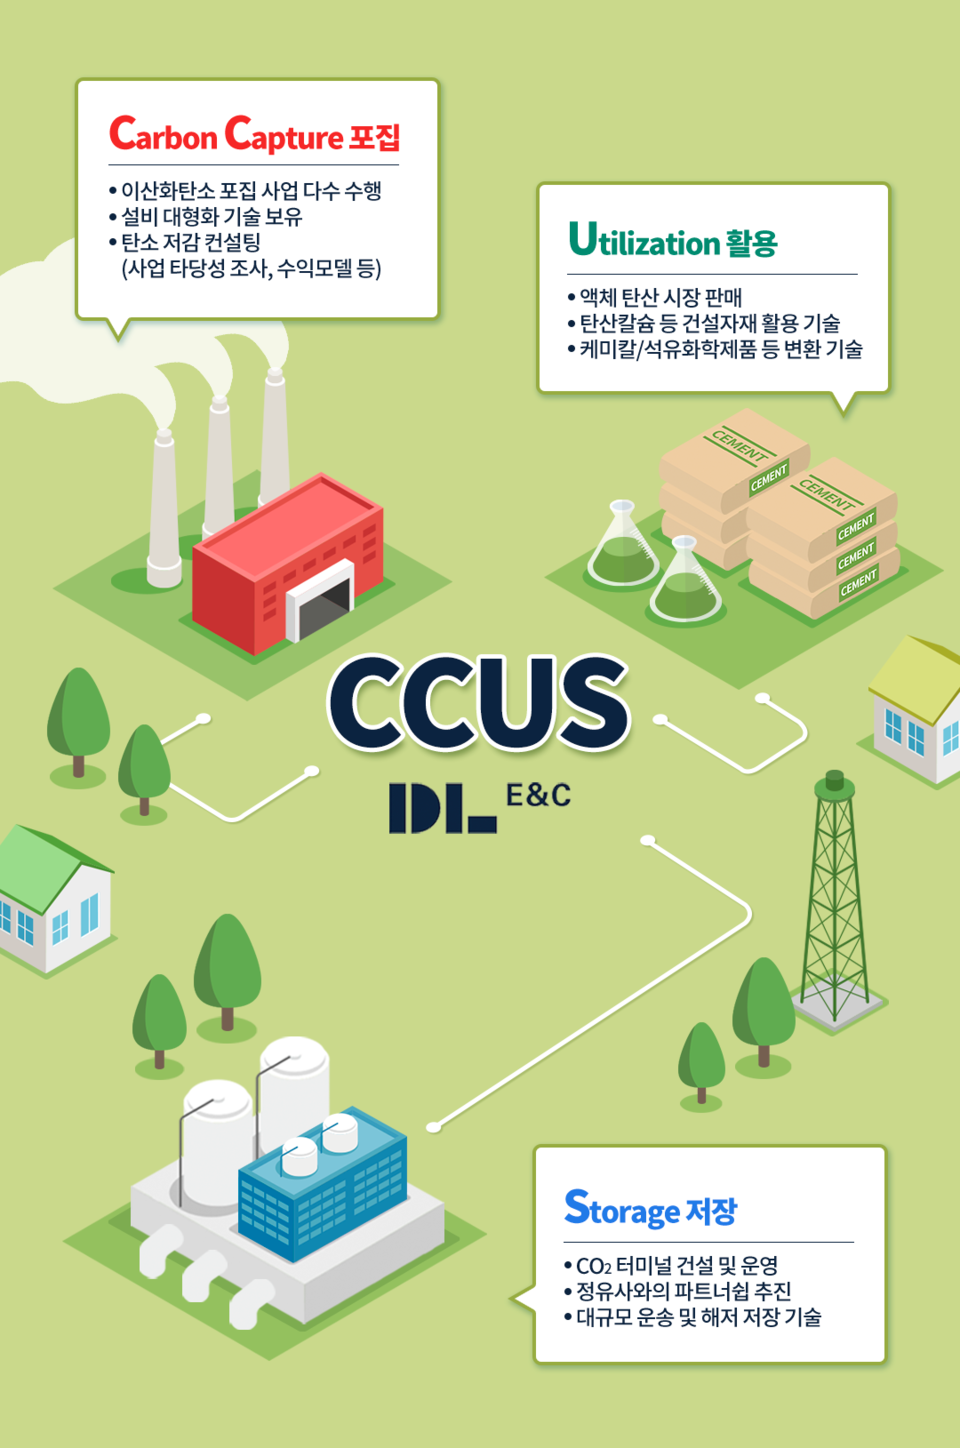 CCUS 사업 성장 전략을 발표한 DL이앤씨(DL이앤씨 제공)/그린포스트코리아